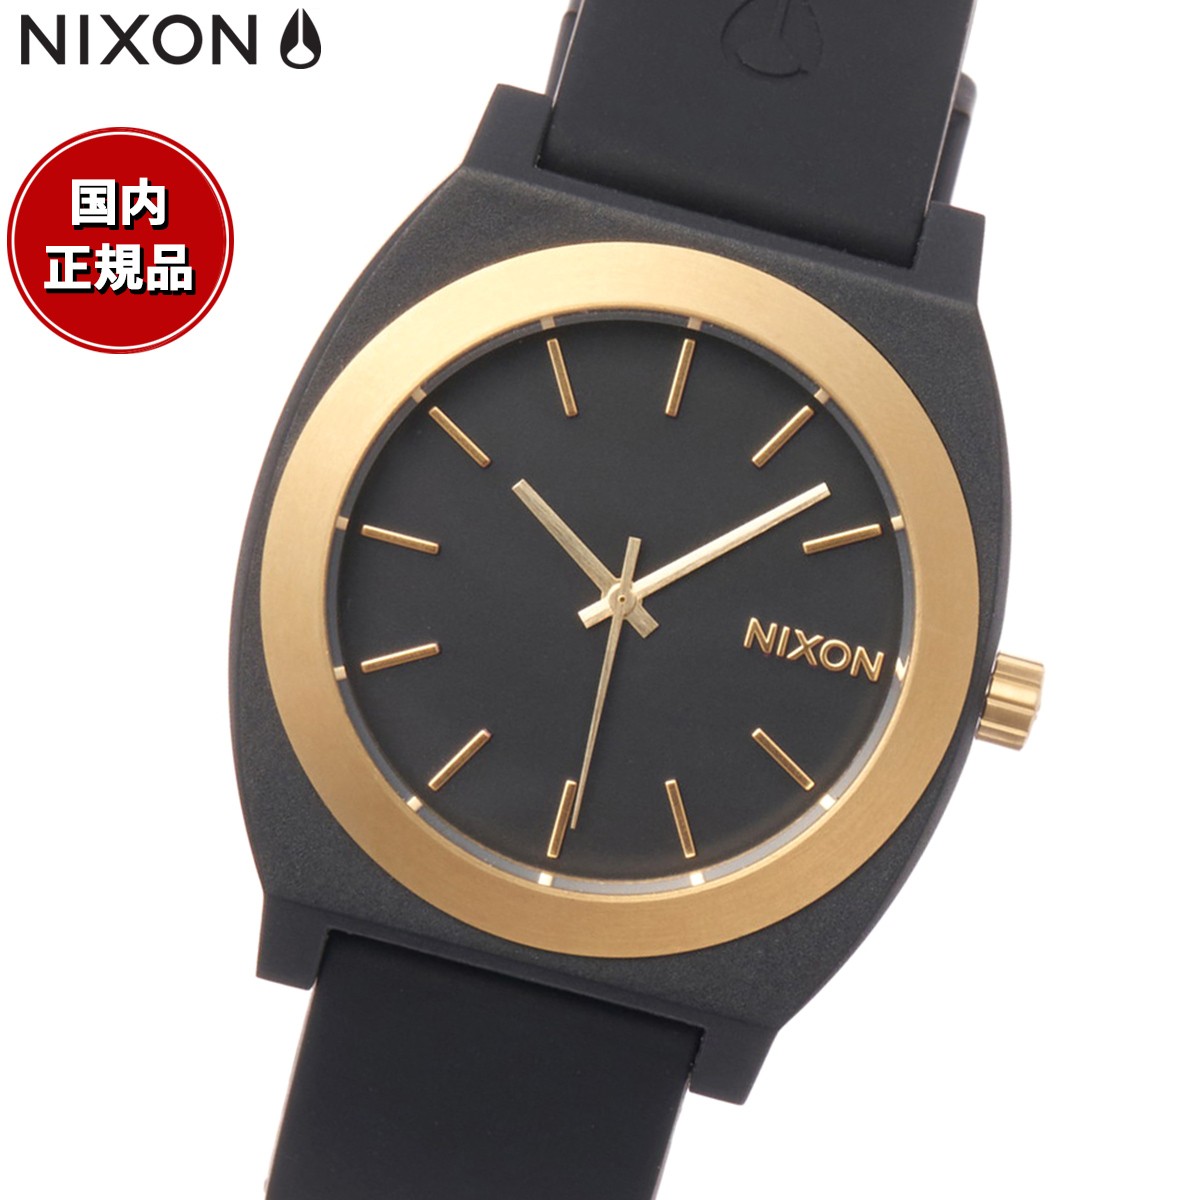 ニクソン NIXON タイムテラー OPP Time Teller OPP 日本限定モデル 腕時計 メンズ レディース ブラック/マットゴールド A13615170-00